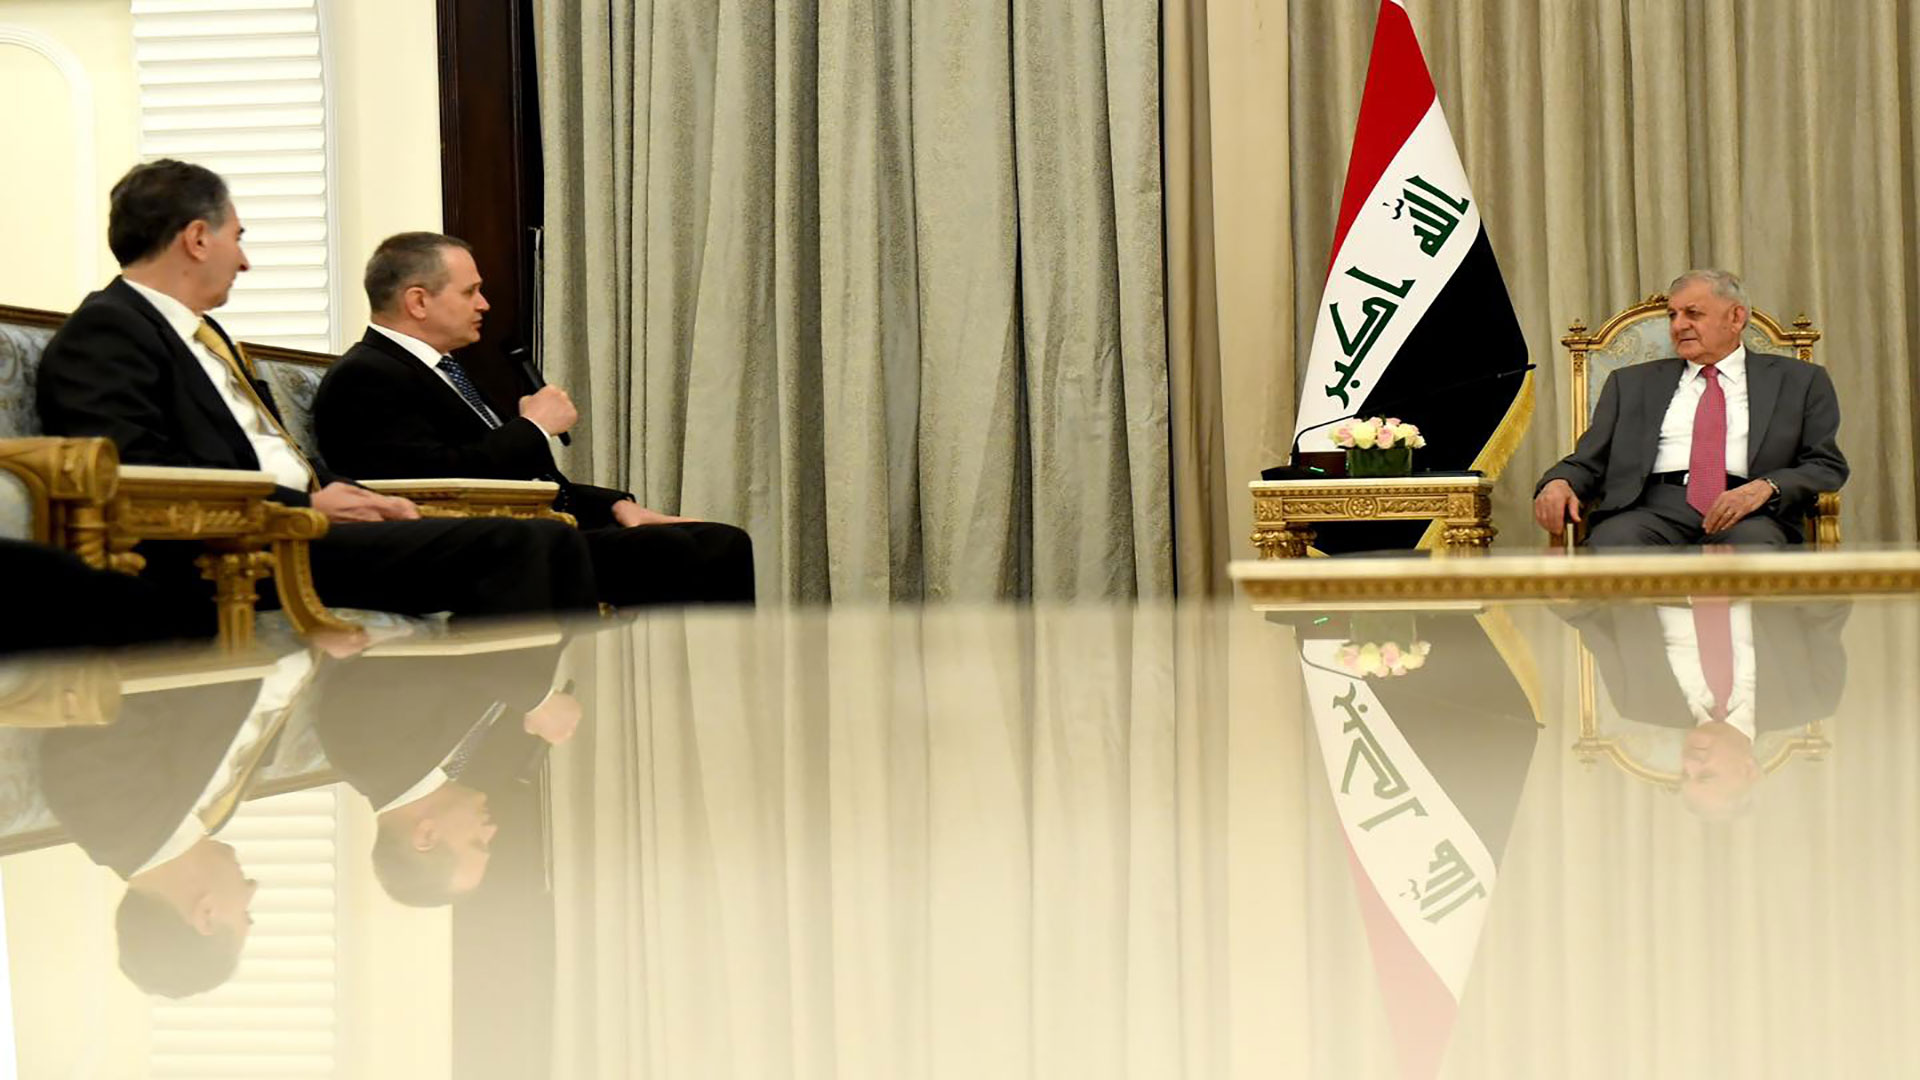  Iraqi President Abdullatif Jamal Rashid on the right and Hungarian Ambassador Atilla Tar on the left.